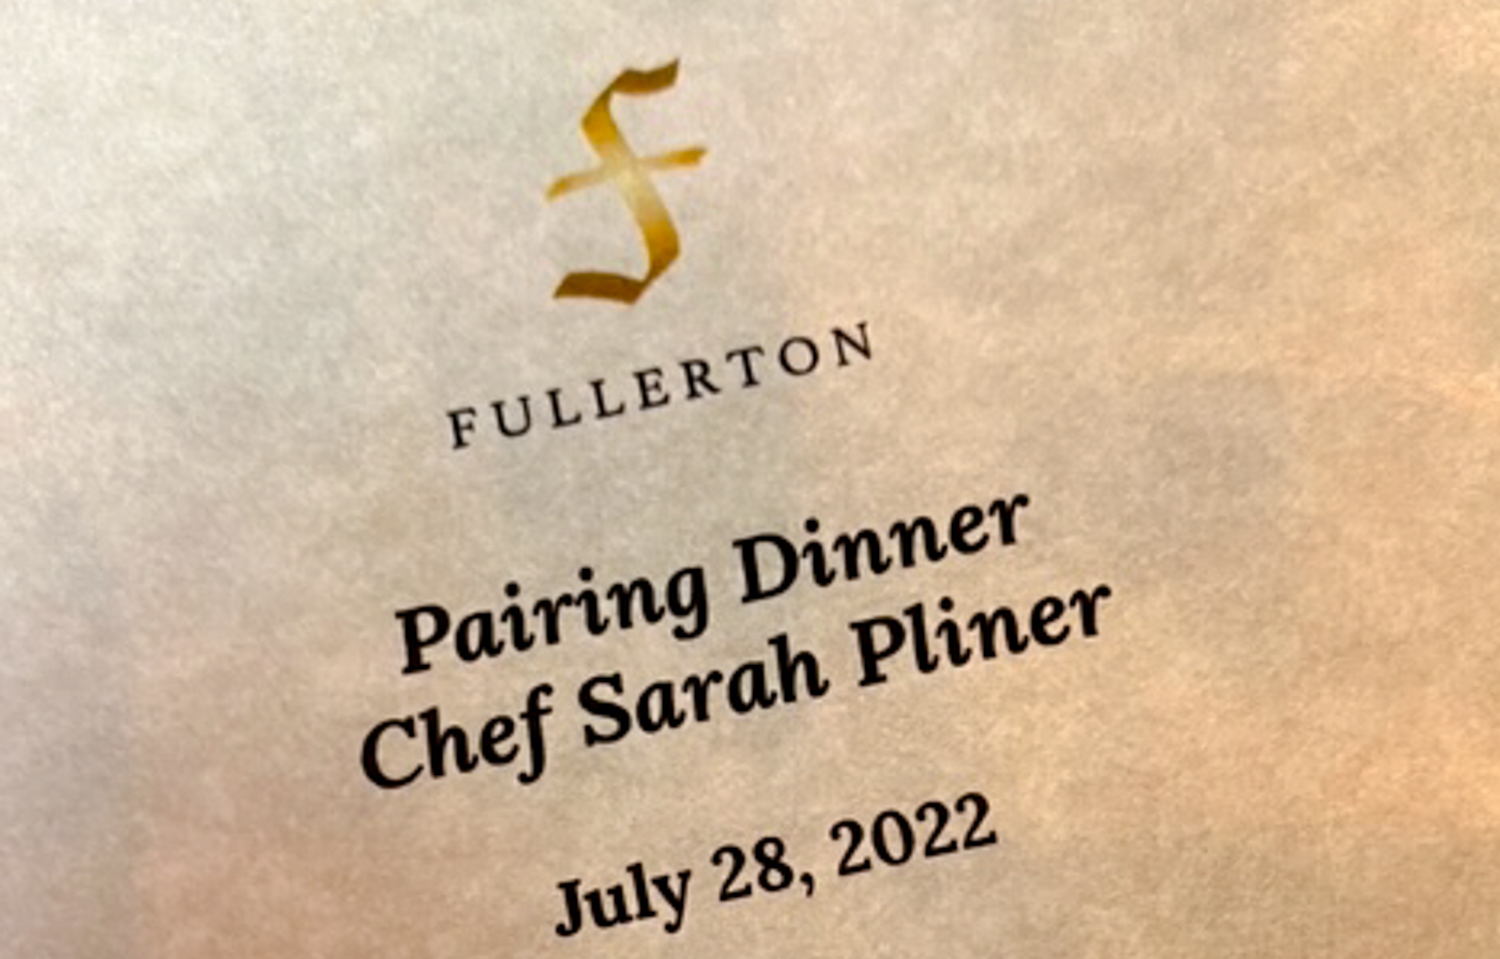 Bi-weekly Wine Pairing Dinners Featuring Chef Sarah Pliner & Fullerton Wines 